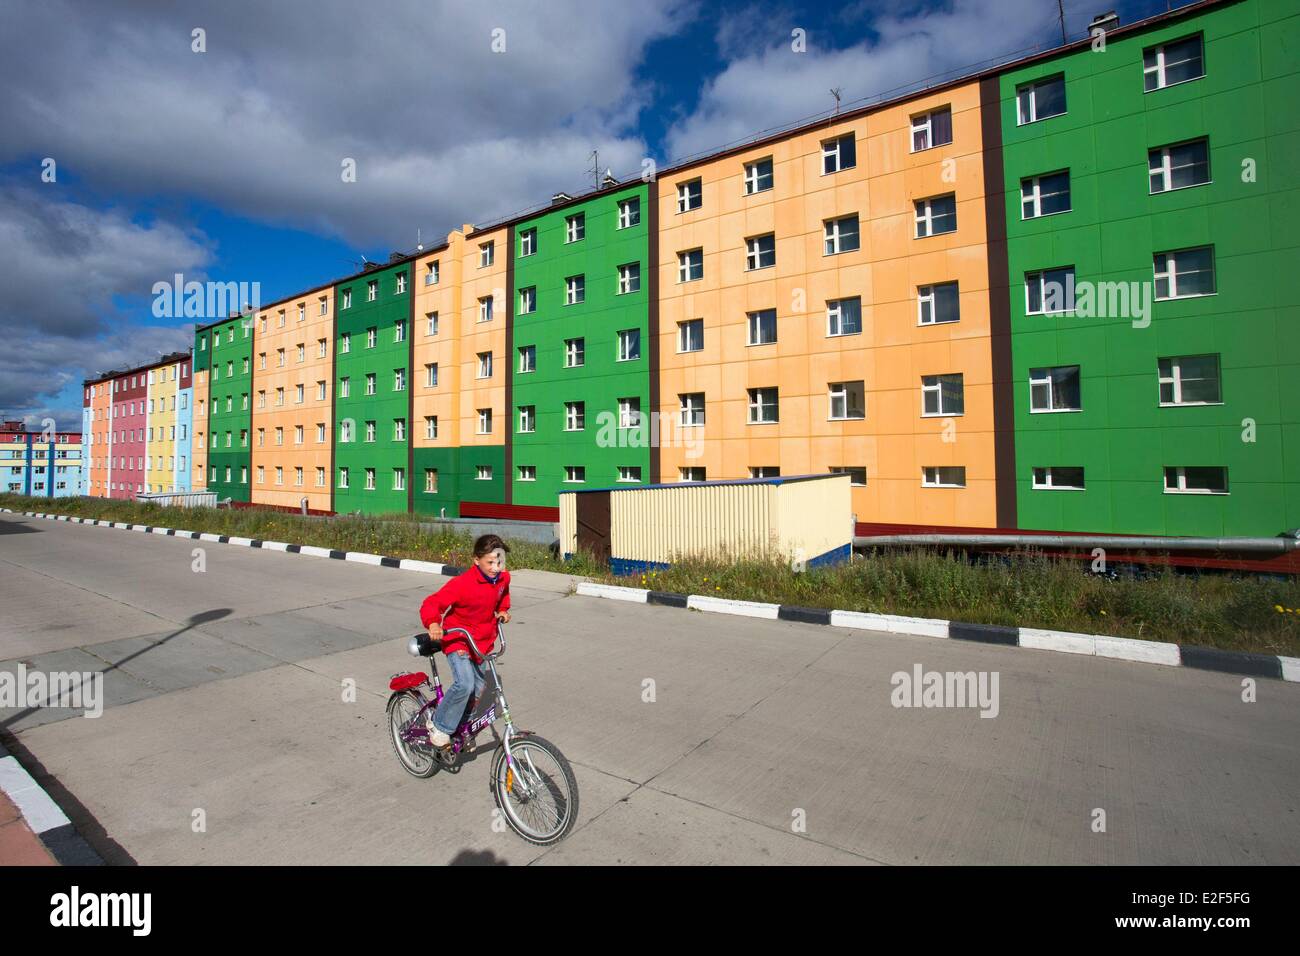 La Russie, la Tchoukotka, district autonome d'Anadyr, headtown du district, les bâtiments peints ou décorés avec des photos en couleur Banque D'Images